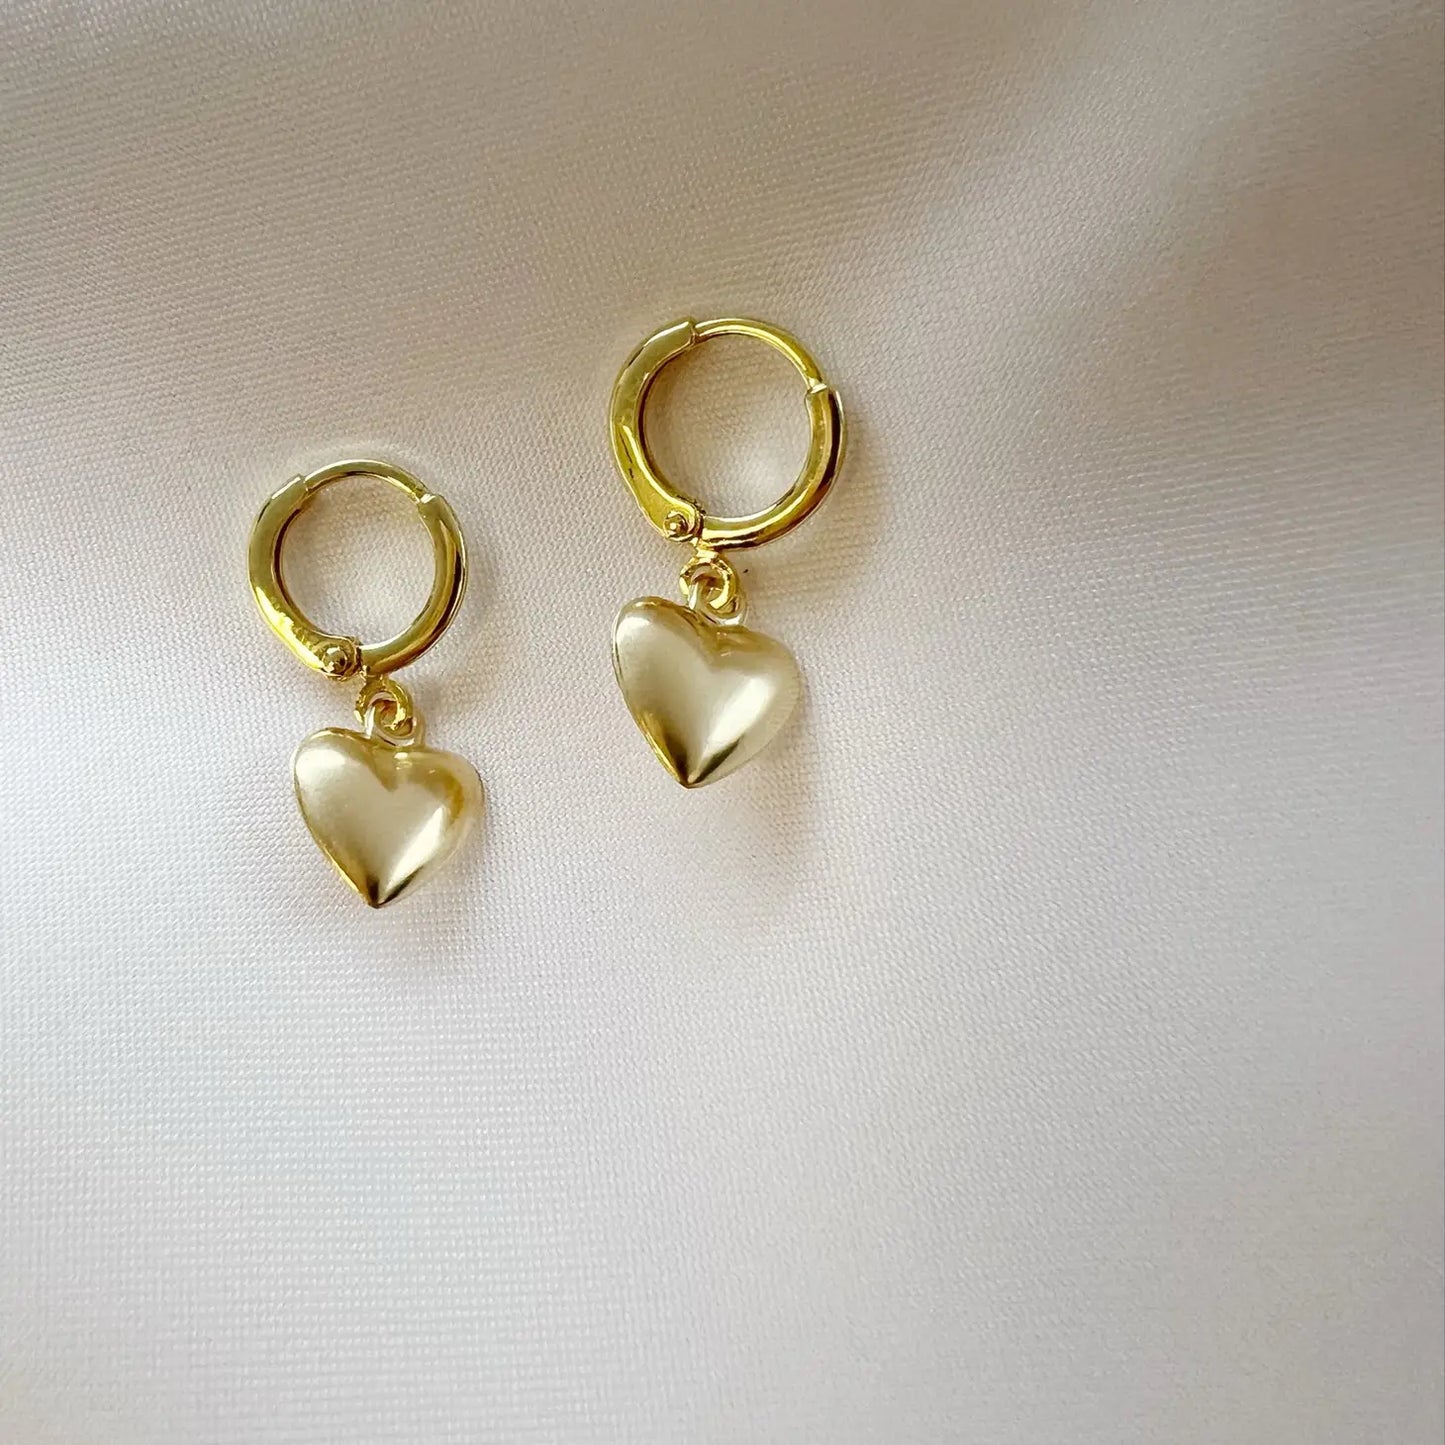 Hartley Heart Hoops Gold Filled Earrings - True by Kristy Jewelry